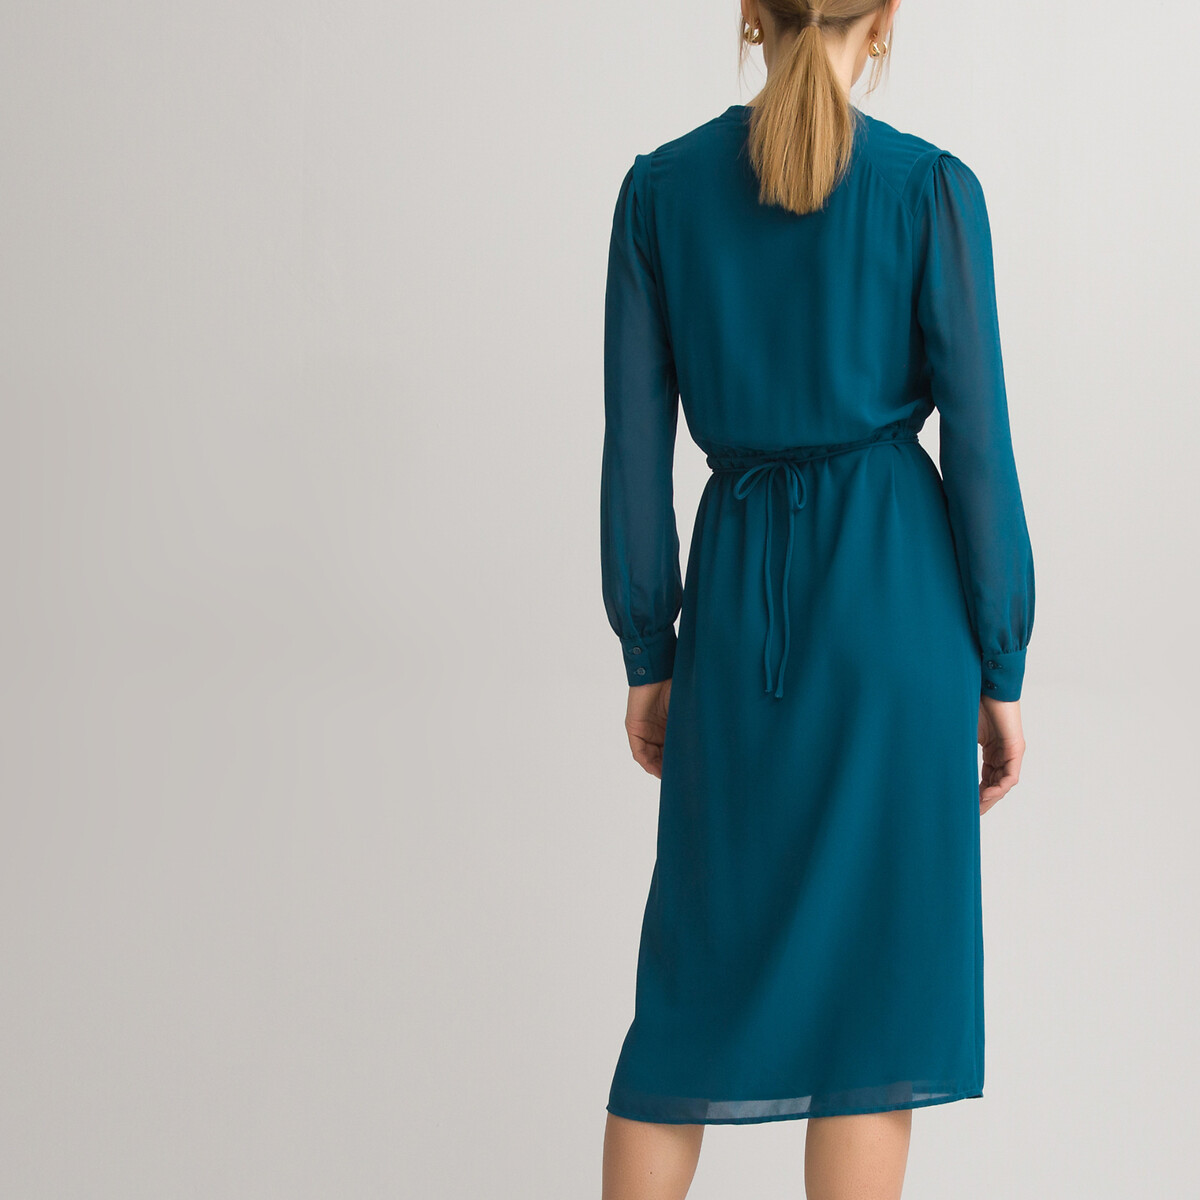 Платье-рубашка LaRedoute С круглым вырезом и длинными рукавами 44 (FR) - 50 (RUS) синий, размер 44 (FR) - 50 (RUS) С круглым вырезом и длинными рукавами 44 (FR) - 50 (RUS) синий - фото 4